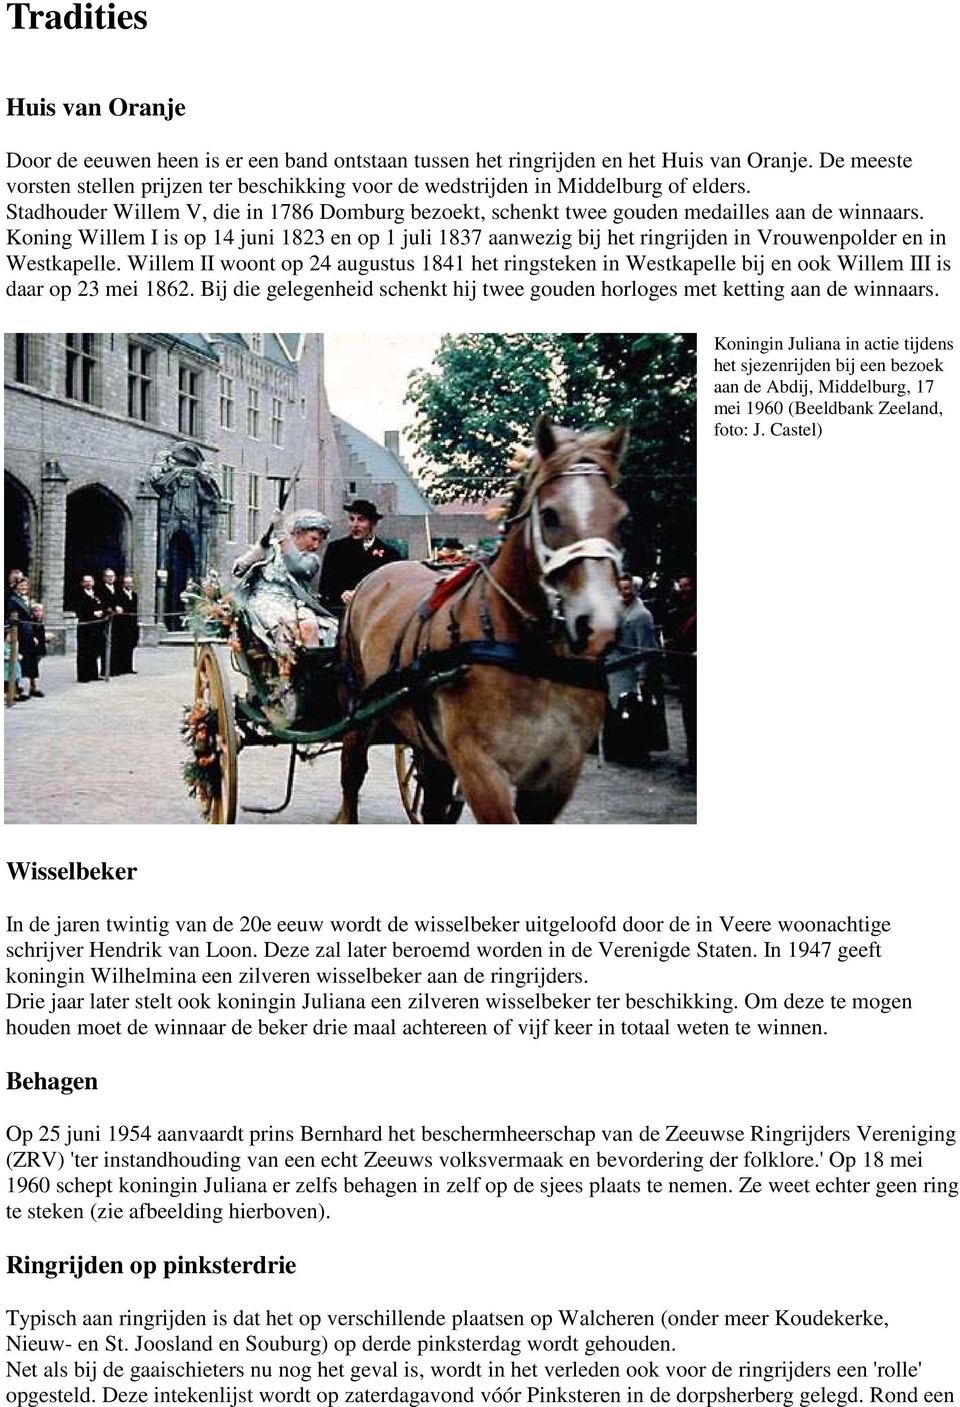 Koning Willem I is op 14 juni 1823 en op 1 juli 1837 aanwezig bij het ringrijden in Vrouwenpolder en in Westkapelle.